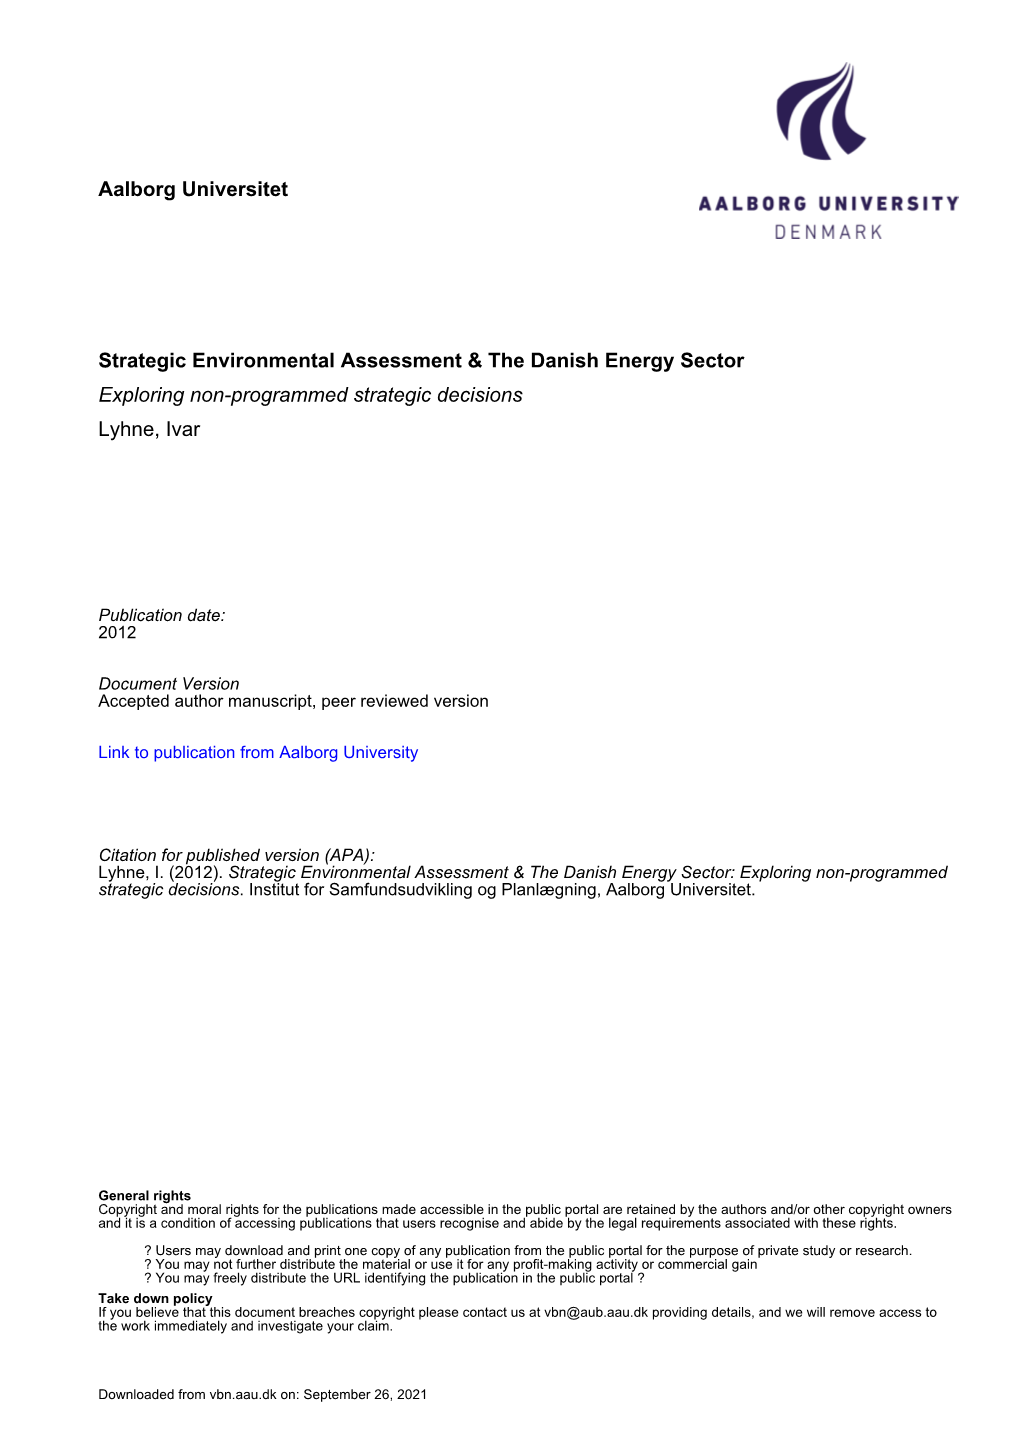 Strategic Environmental Assessment & the Danish Energy Sector